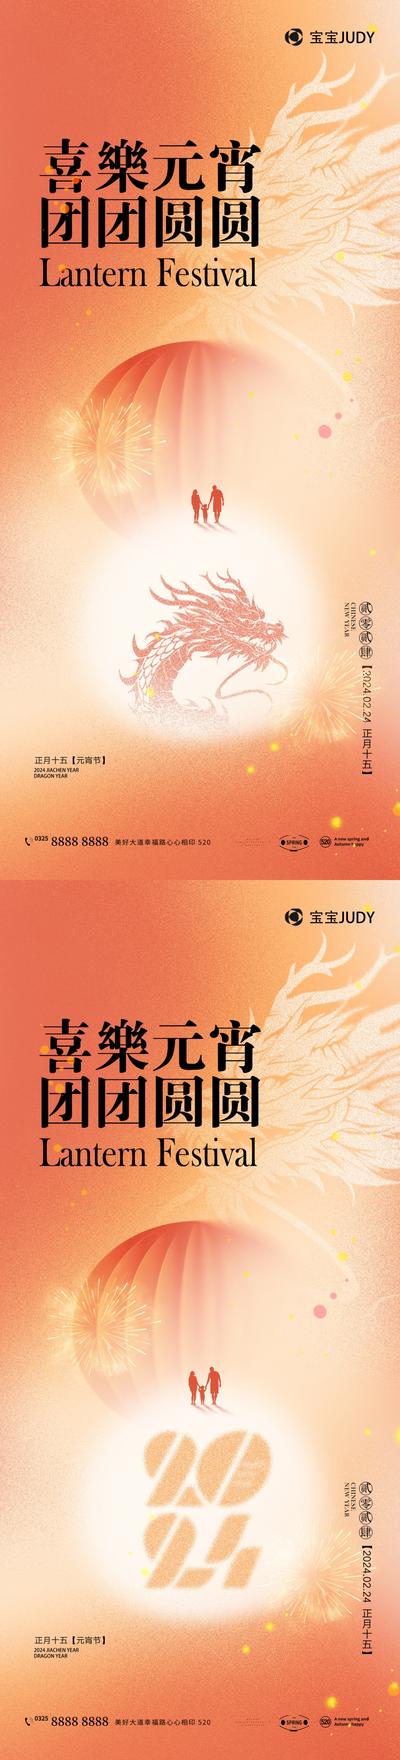 南门网 广告 海拔 节日 元宵 新年 团圆 汤圆 系列 简约